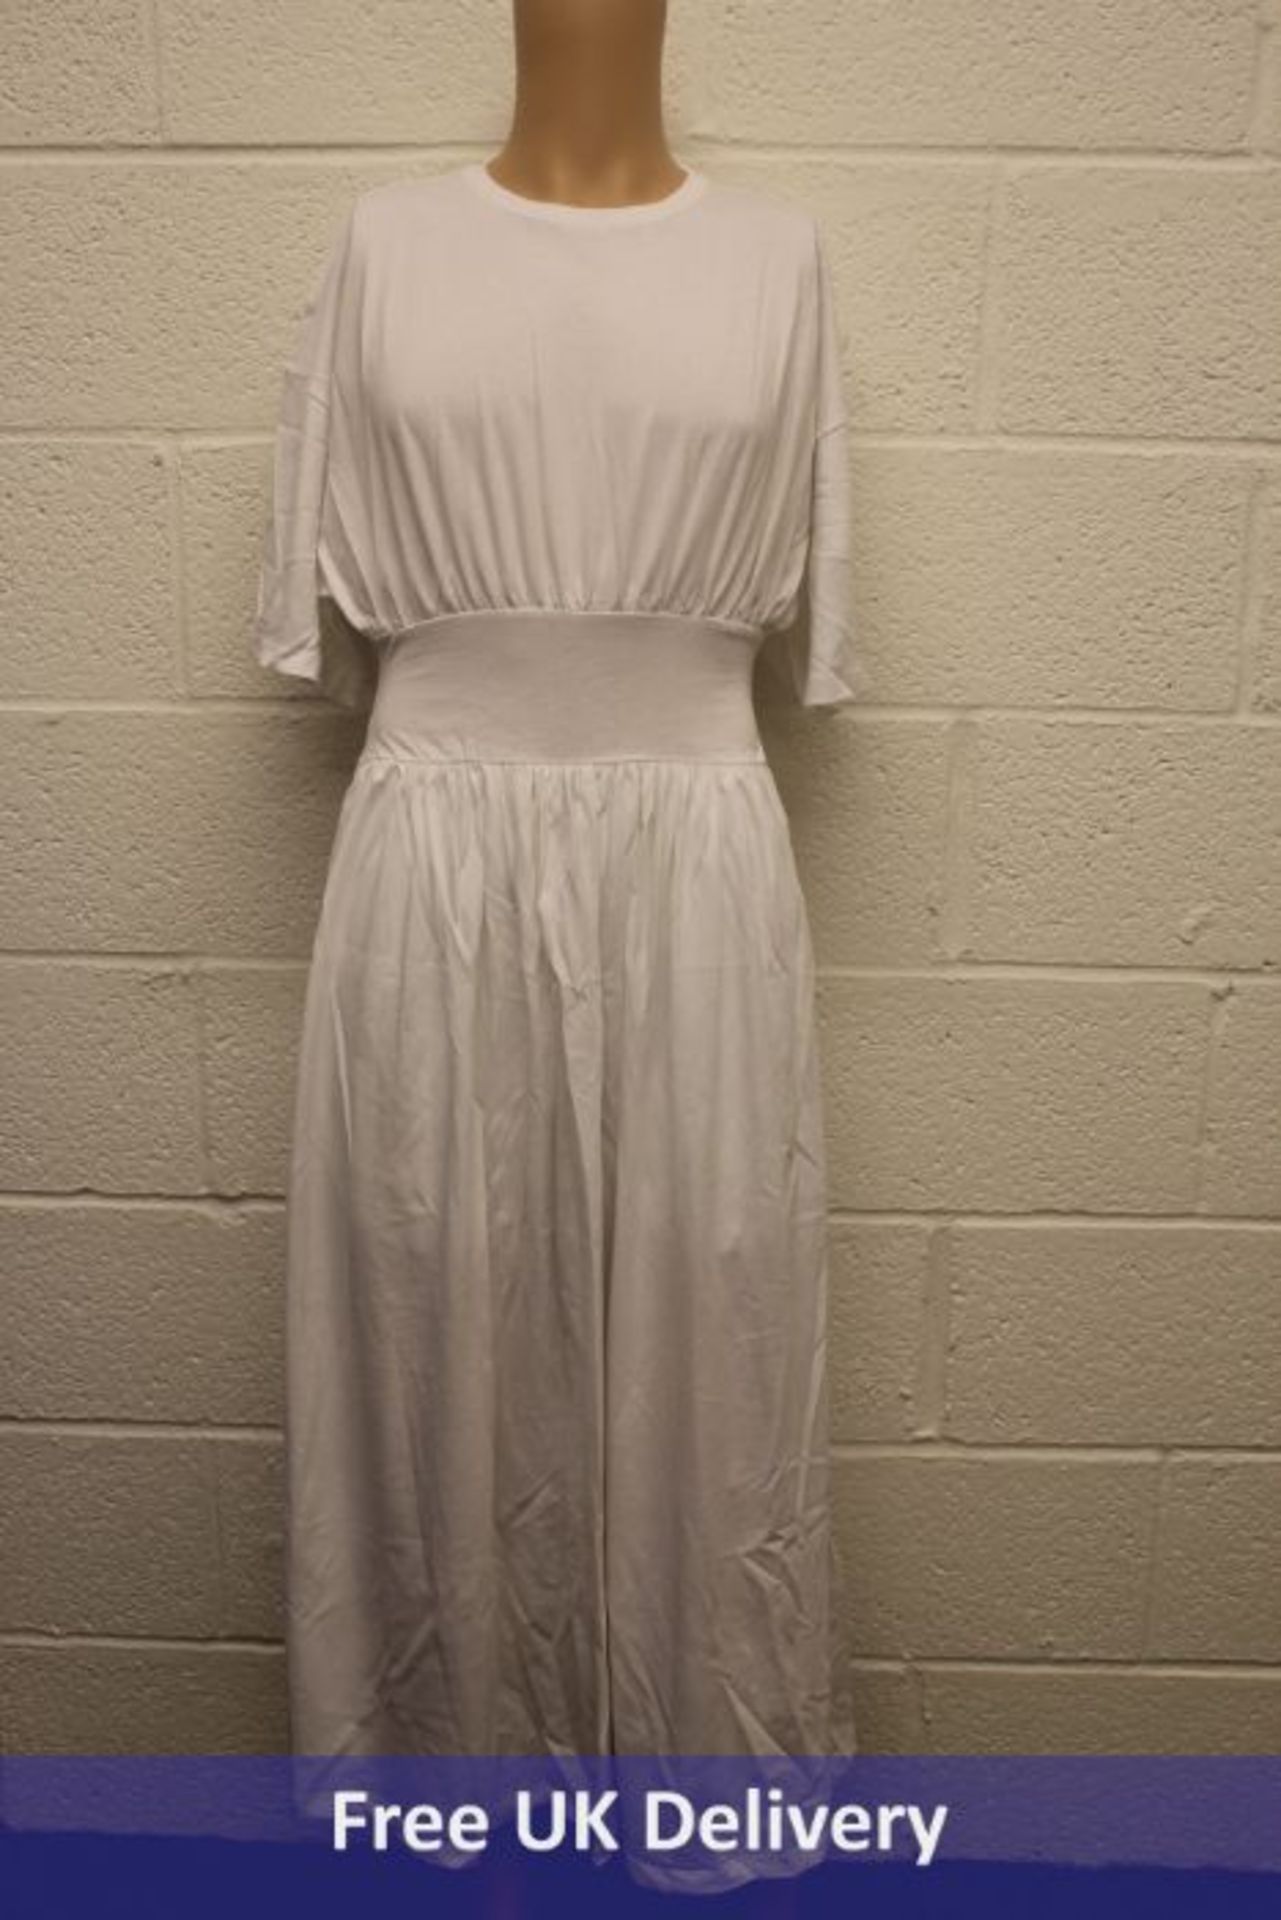 Toteme White Cotton Tee Dress, Size S